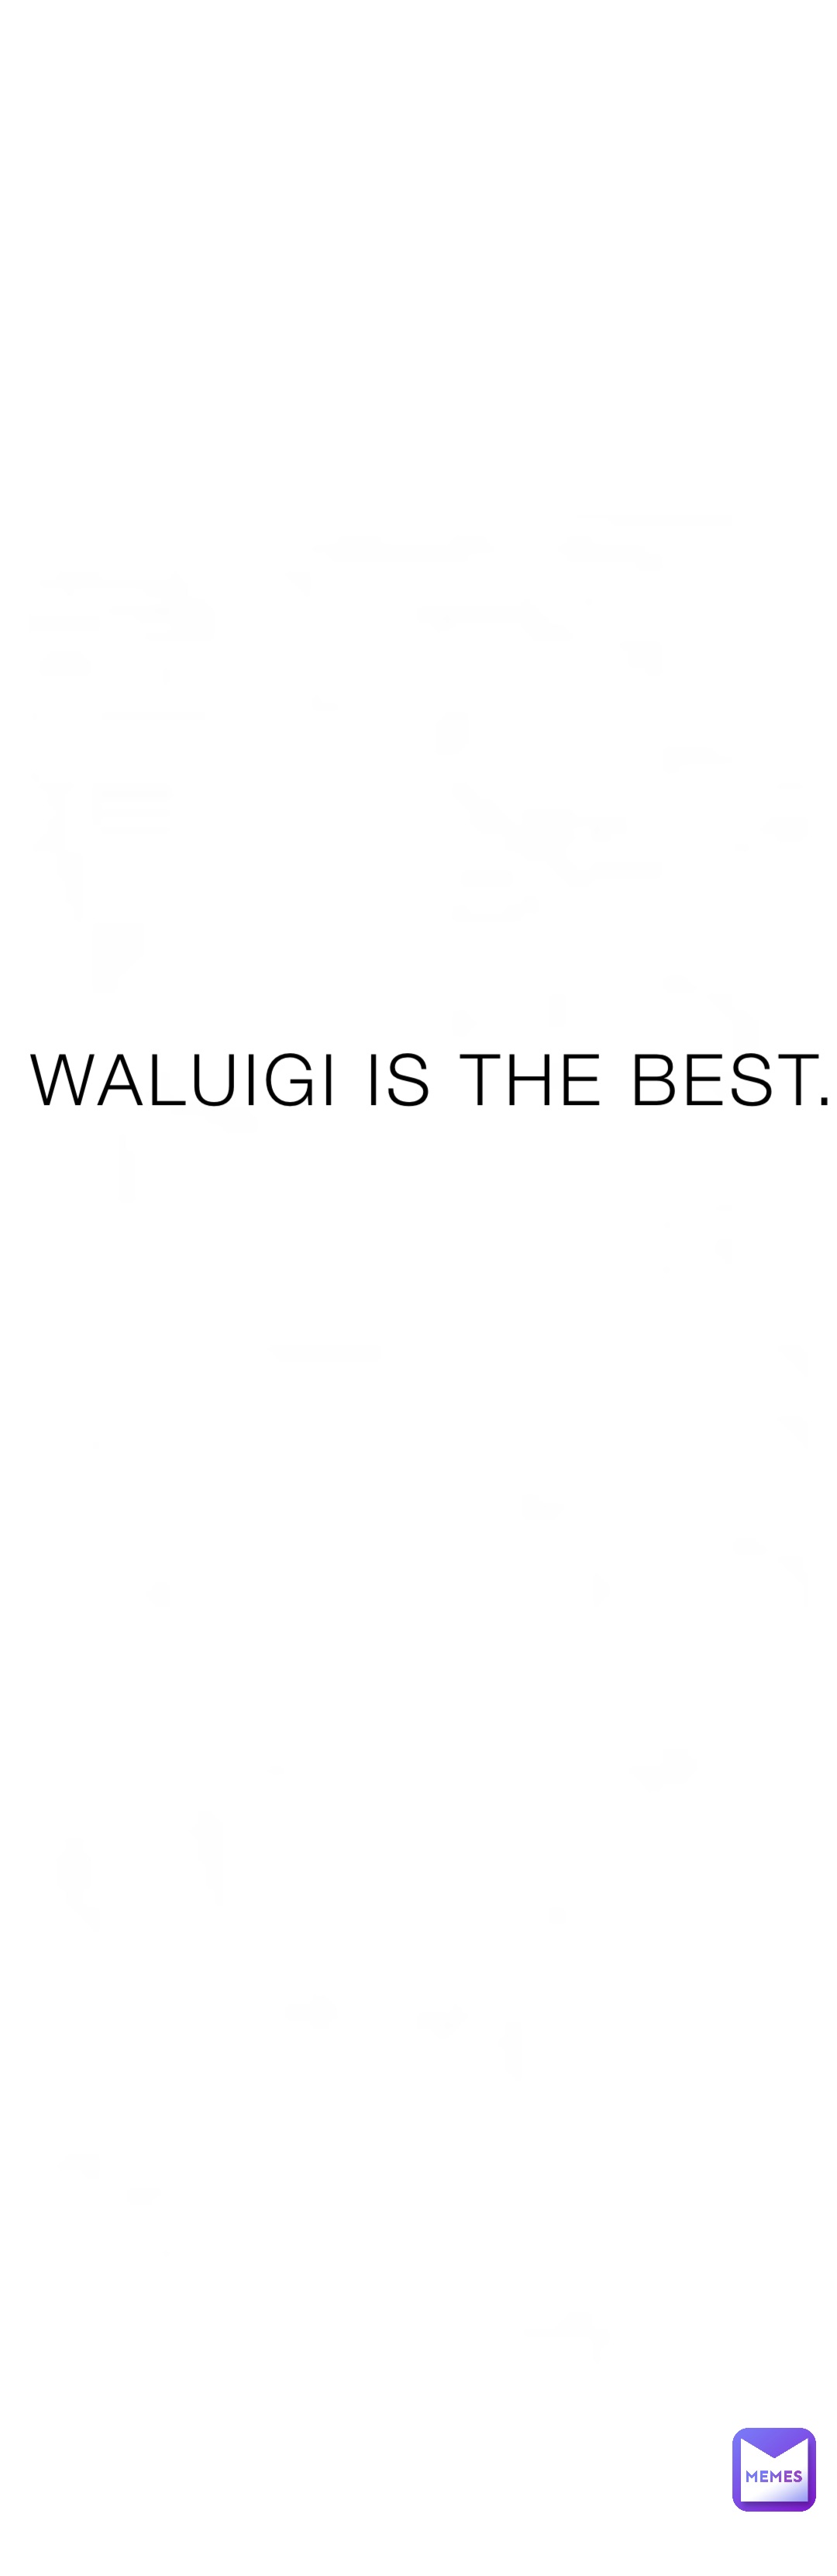 WALUIGI IS THE BEST.